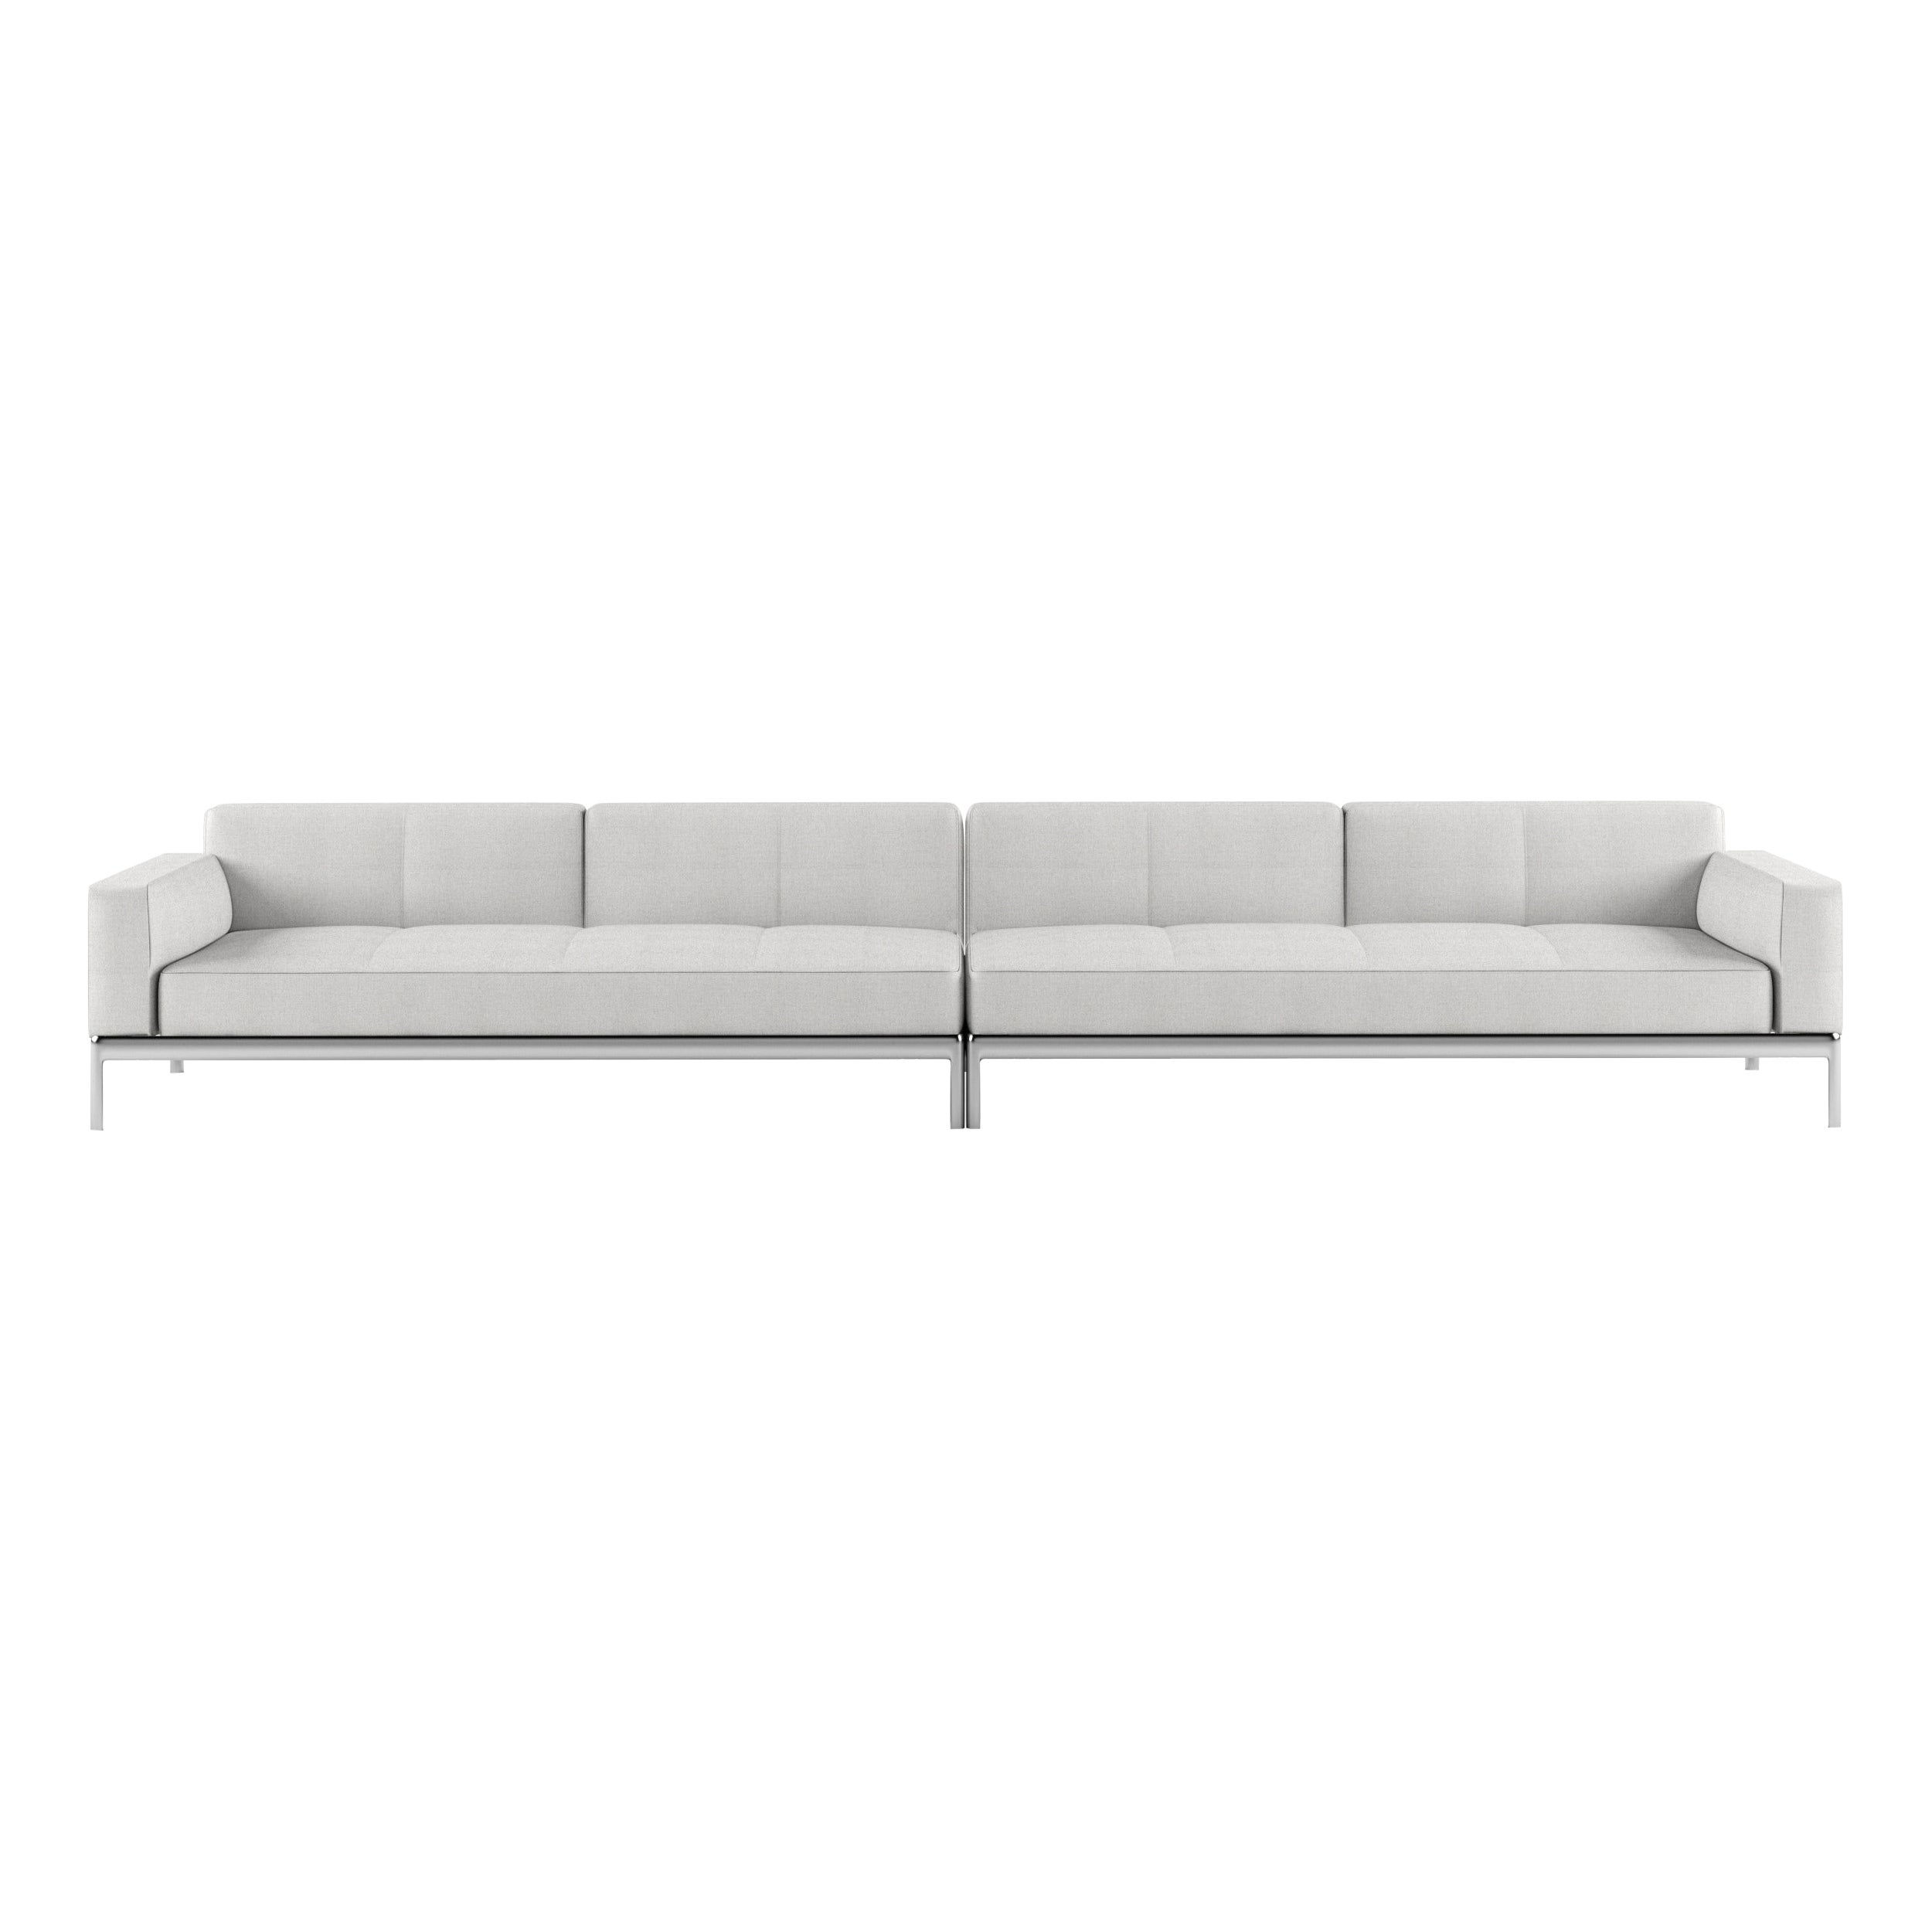 Alias P06 Aluminium-Sofa mit Polsterung und Polsterung aus poliertem Aluminiumrahmen